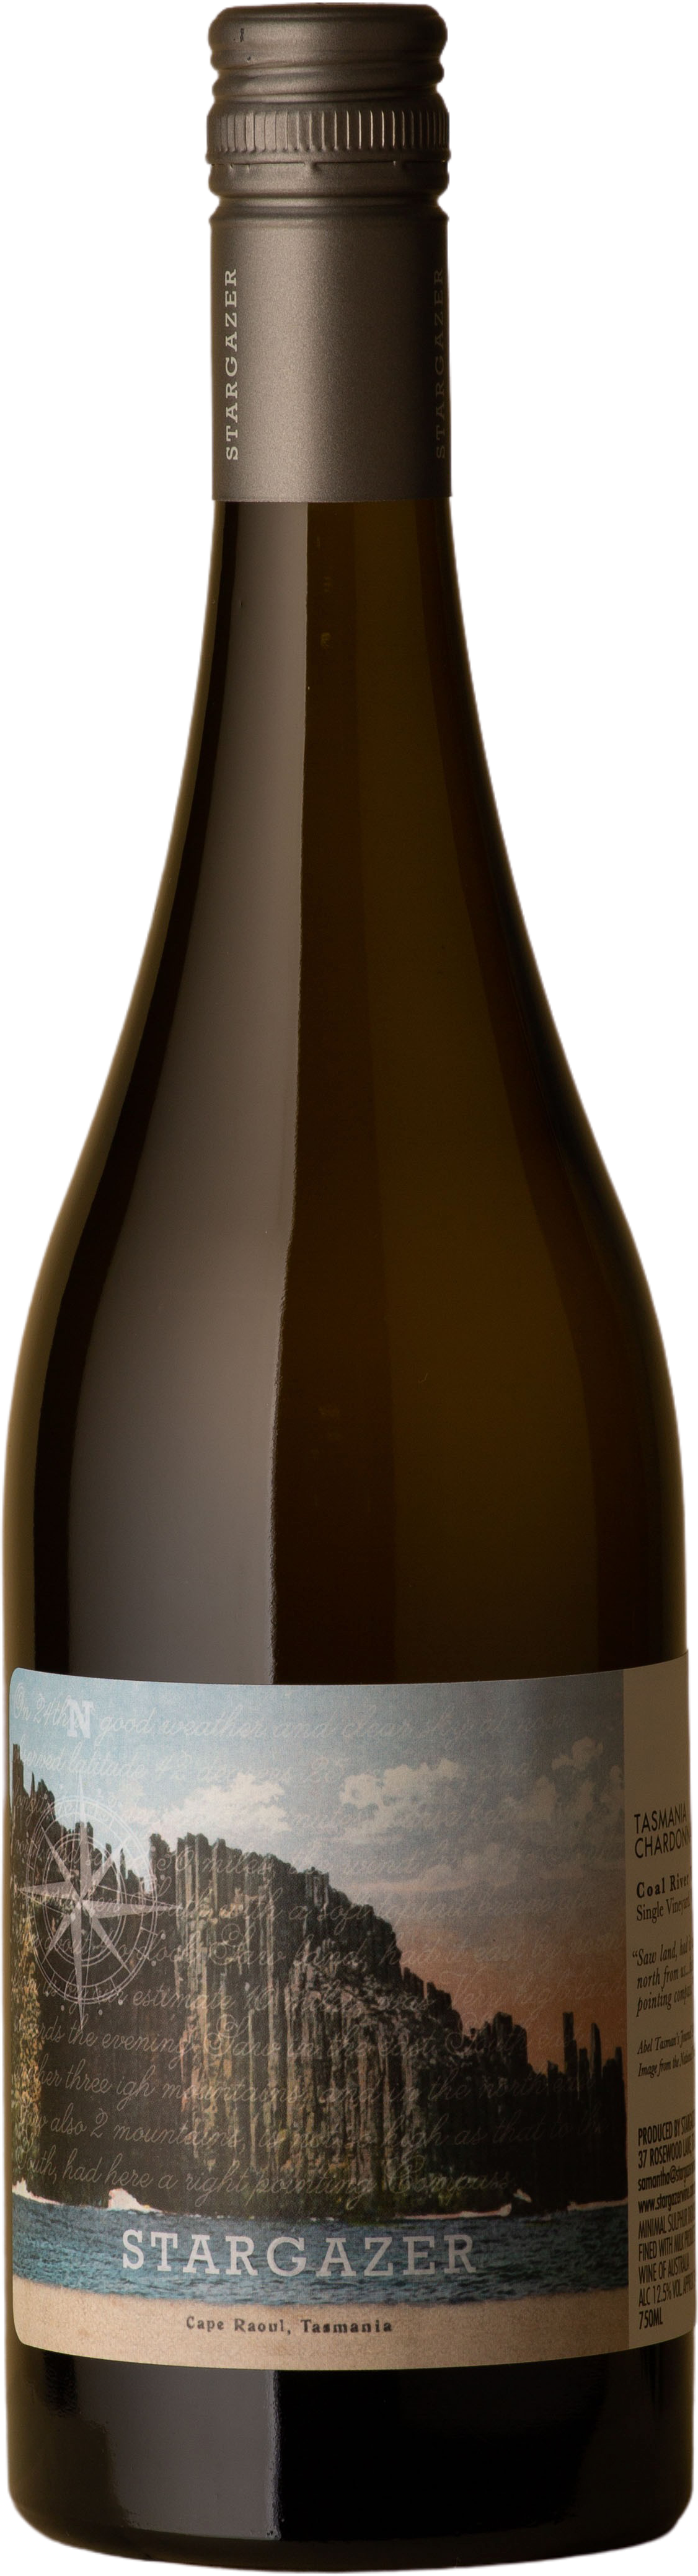 Stargazer - Single Vineyard Chardonnay 2019 White Wine